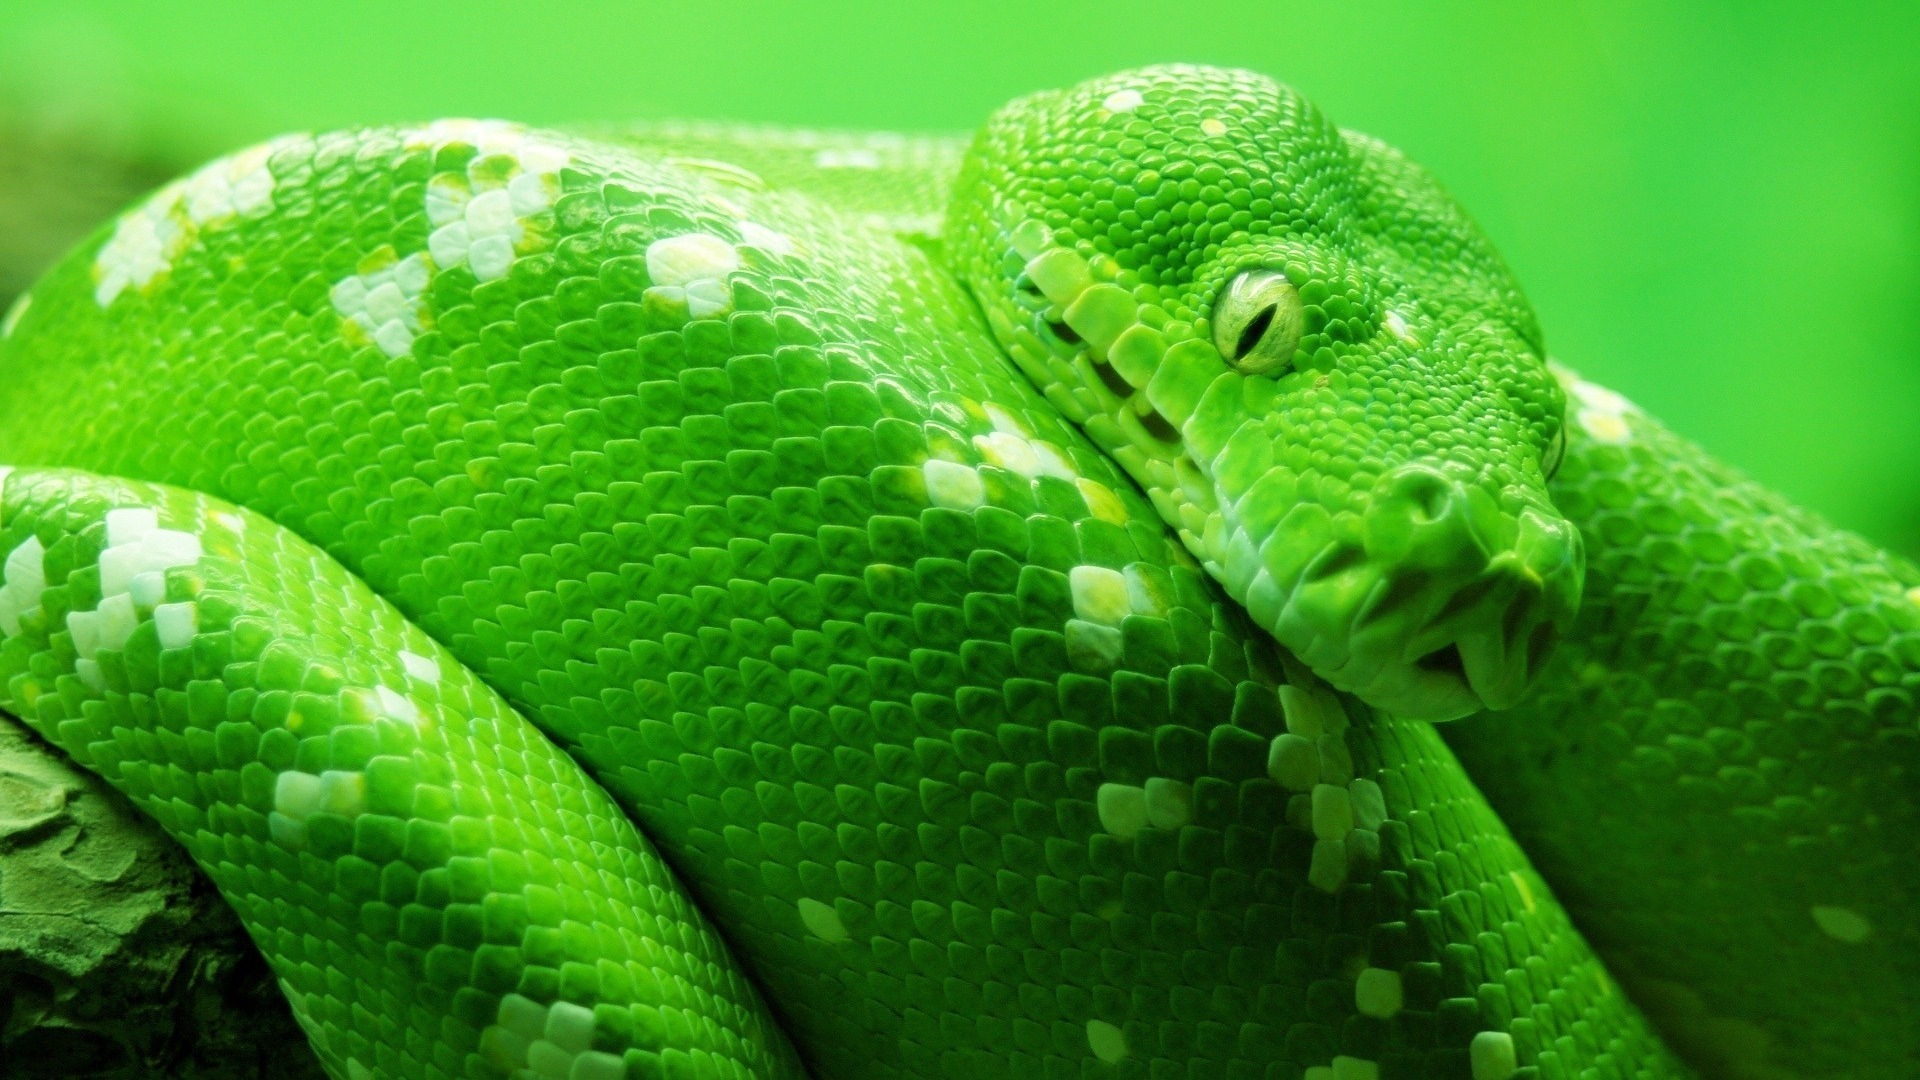 green, Animals, Snakes, Boa, Reptiles Wallpaper